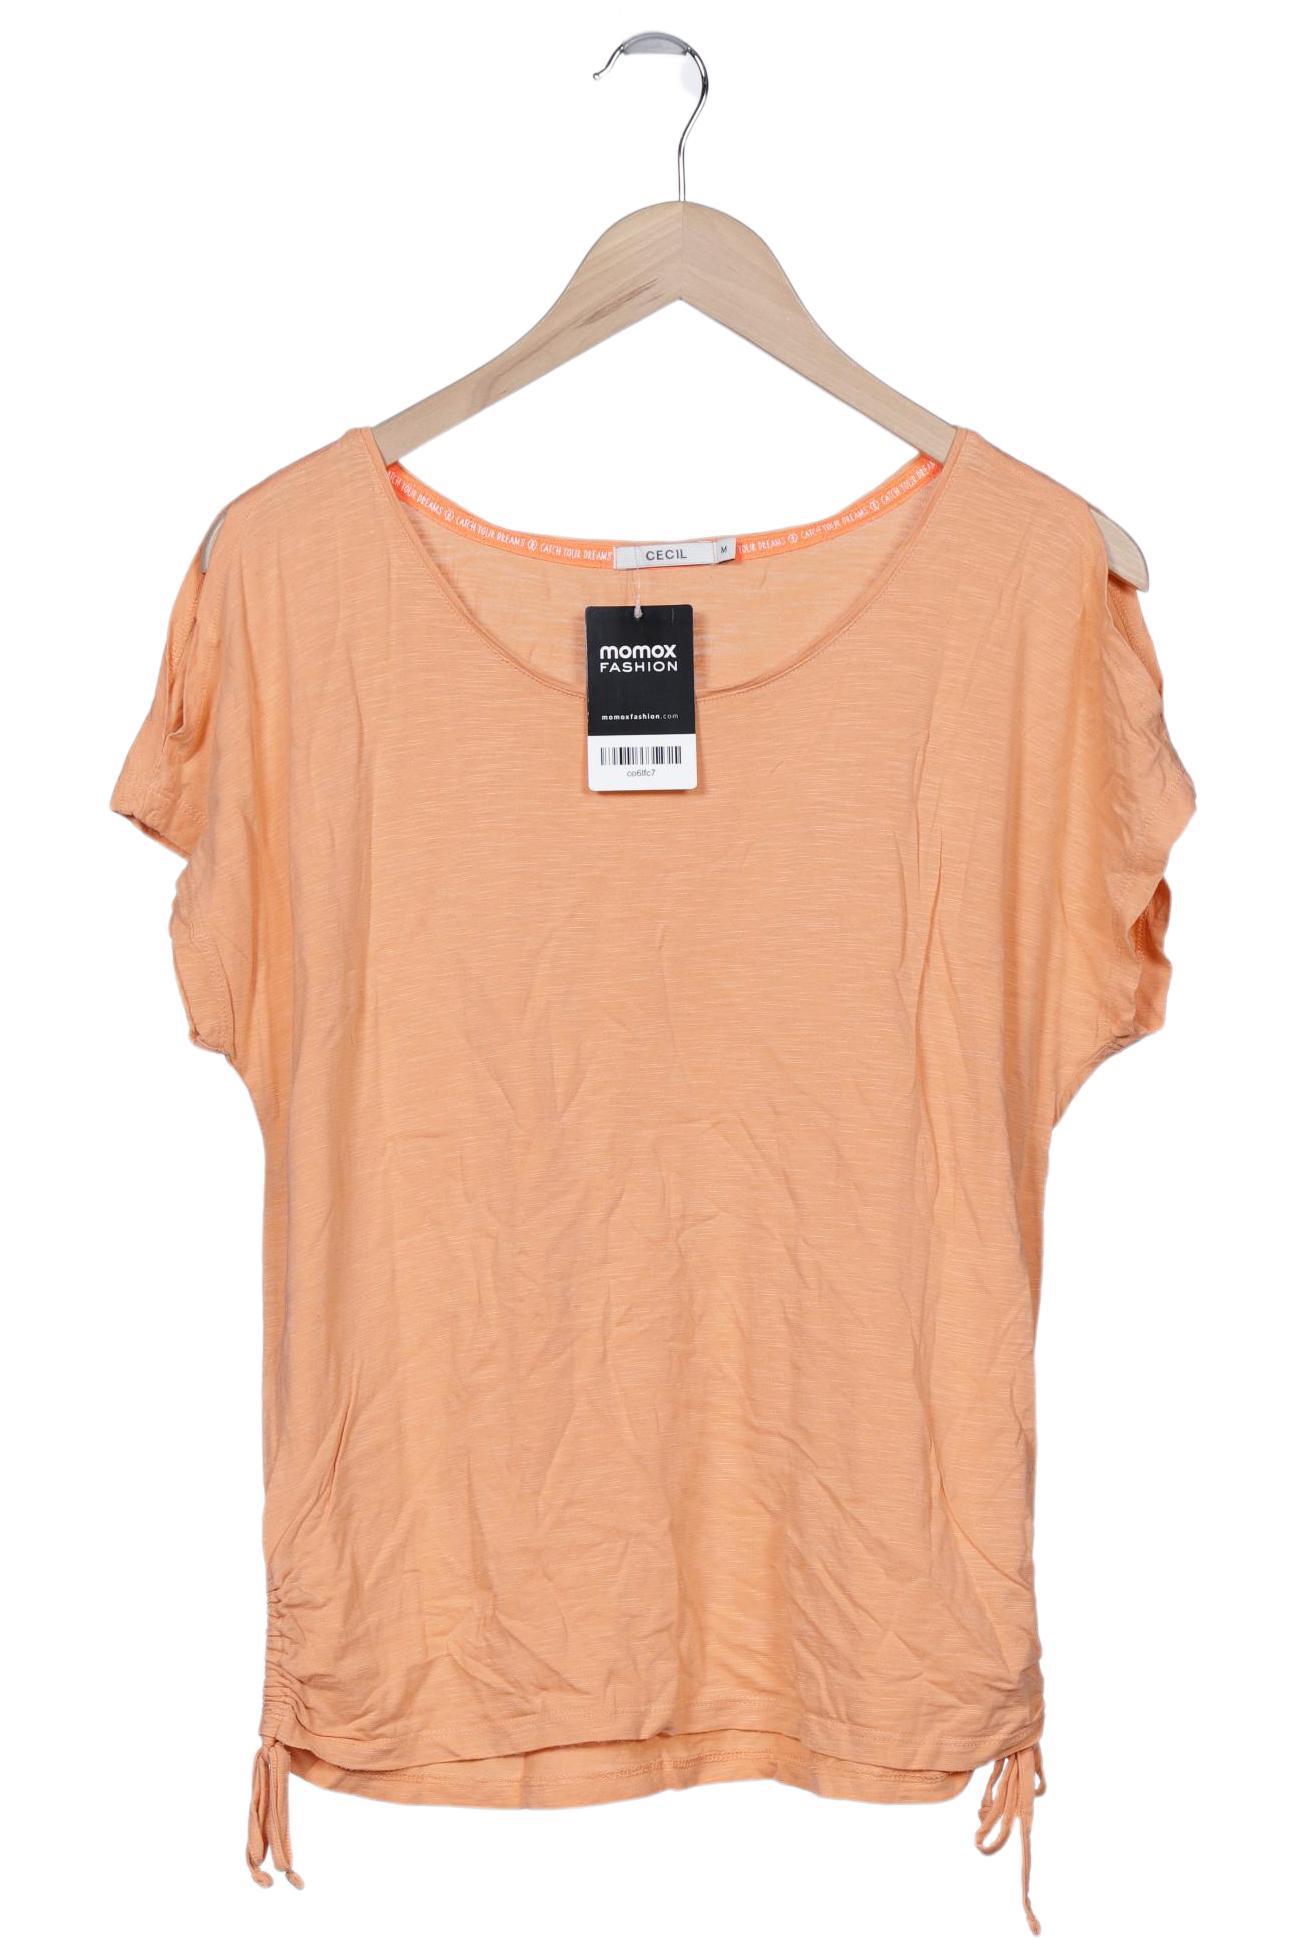 Cecil Damen T-Shirt, orange, Gr. 38 von cecil